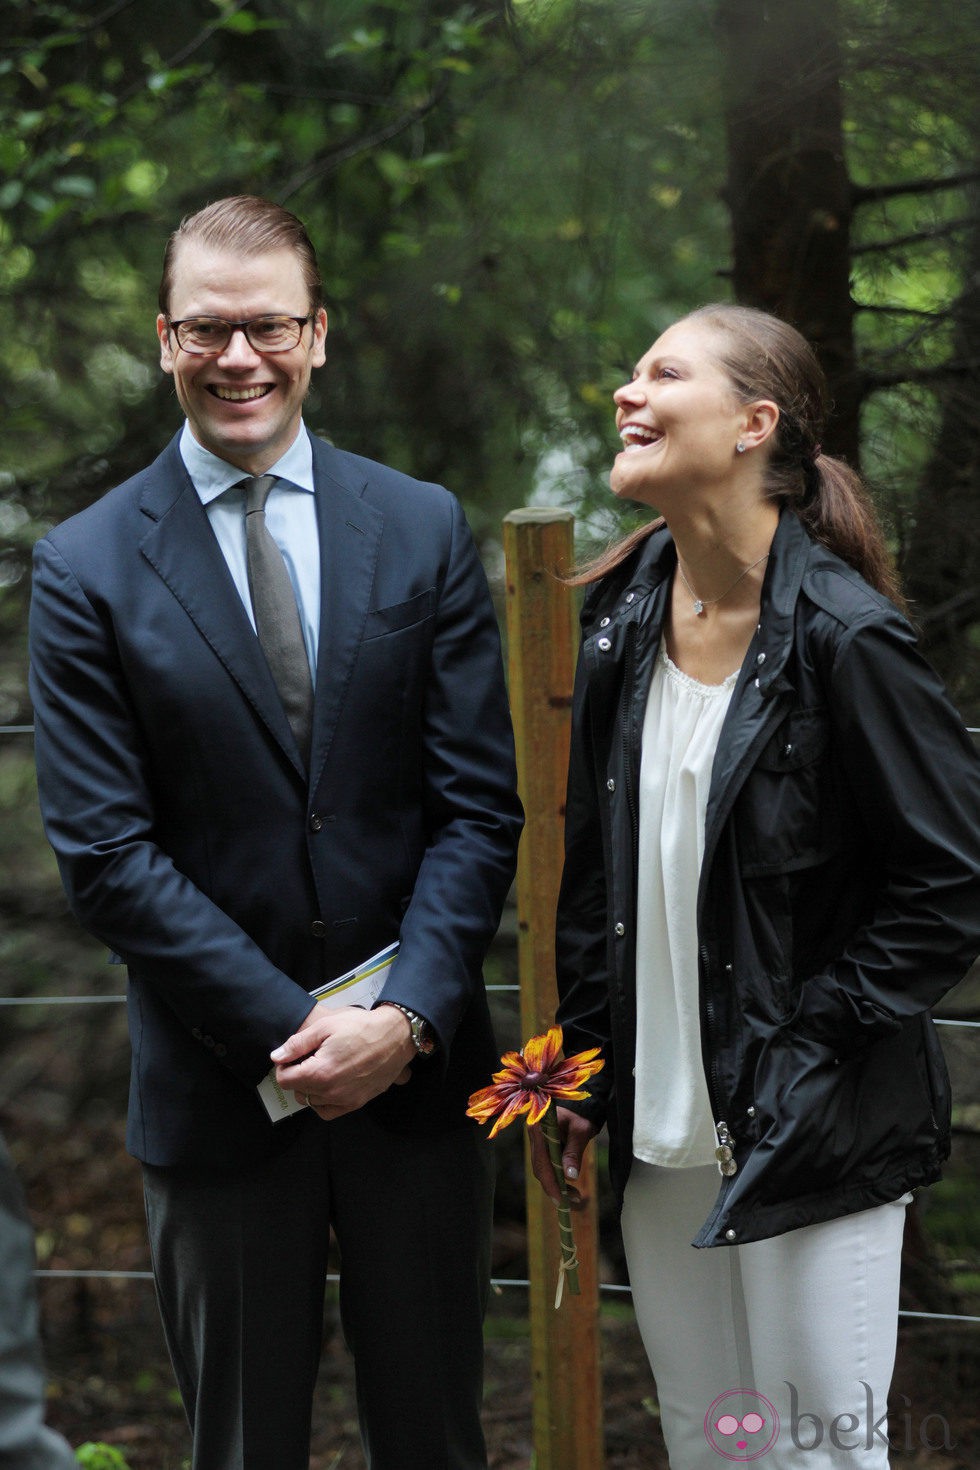 Los Príncipes de Suecia ríen en la inauguración del 'sendero del amor'